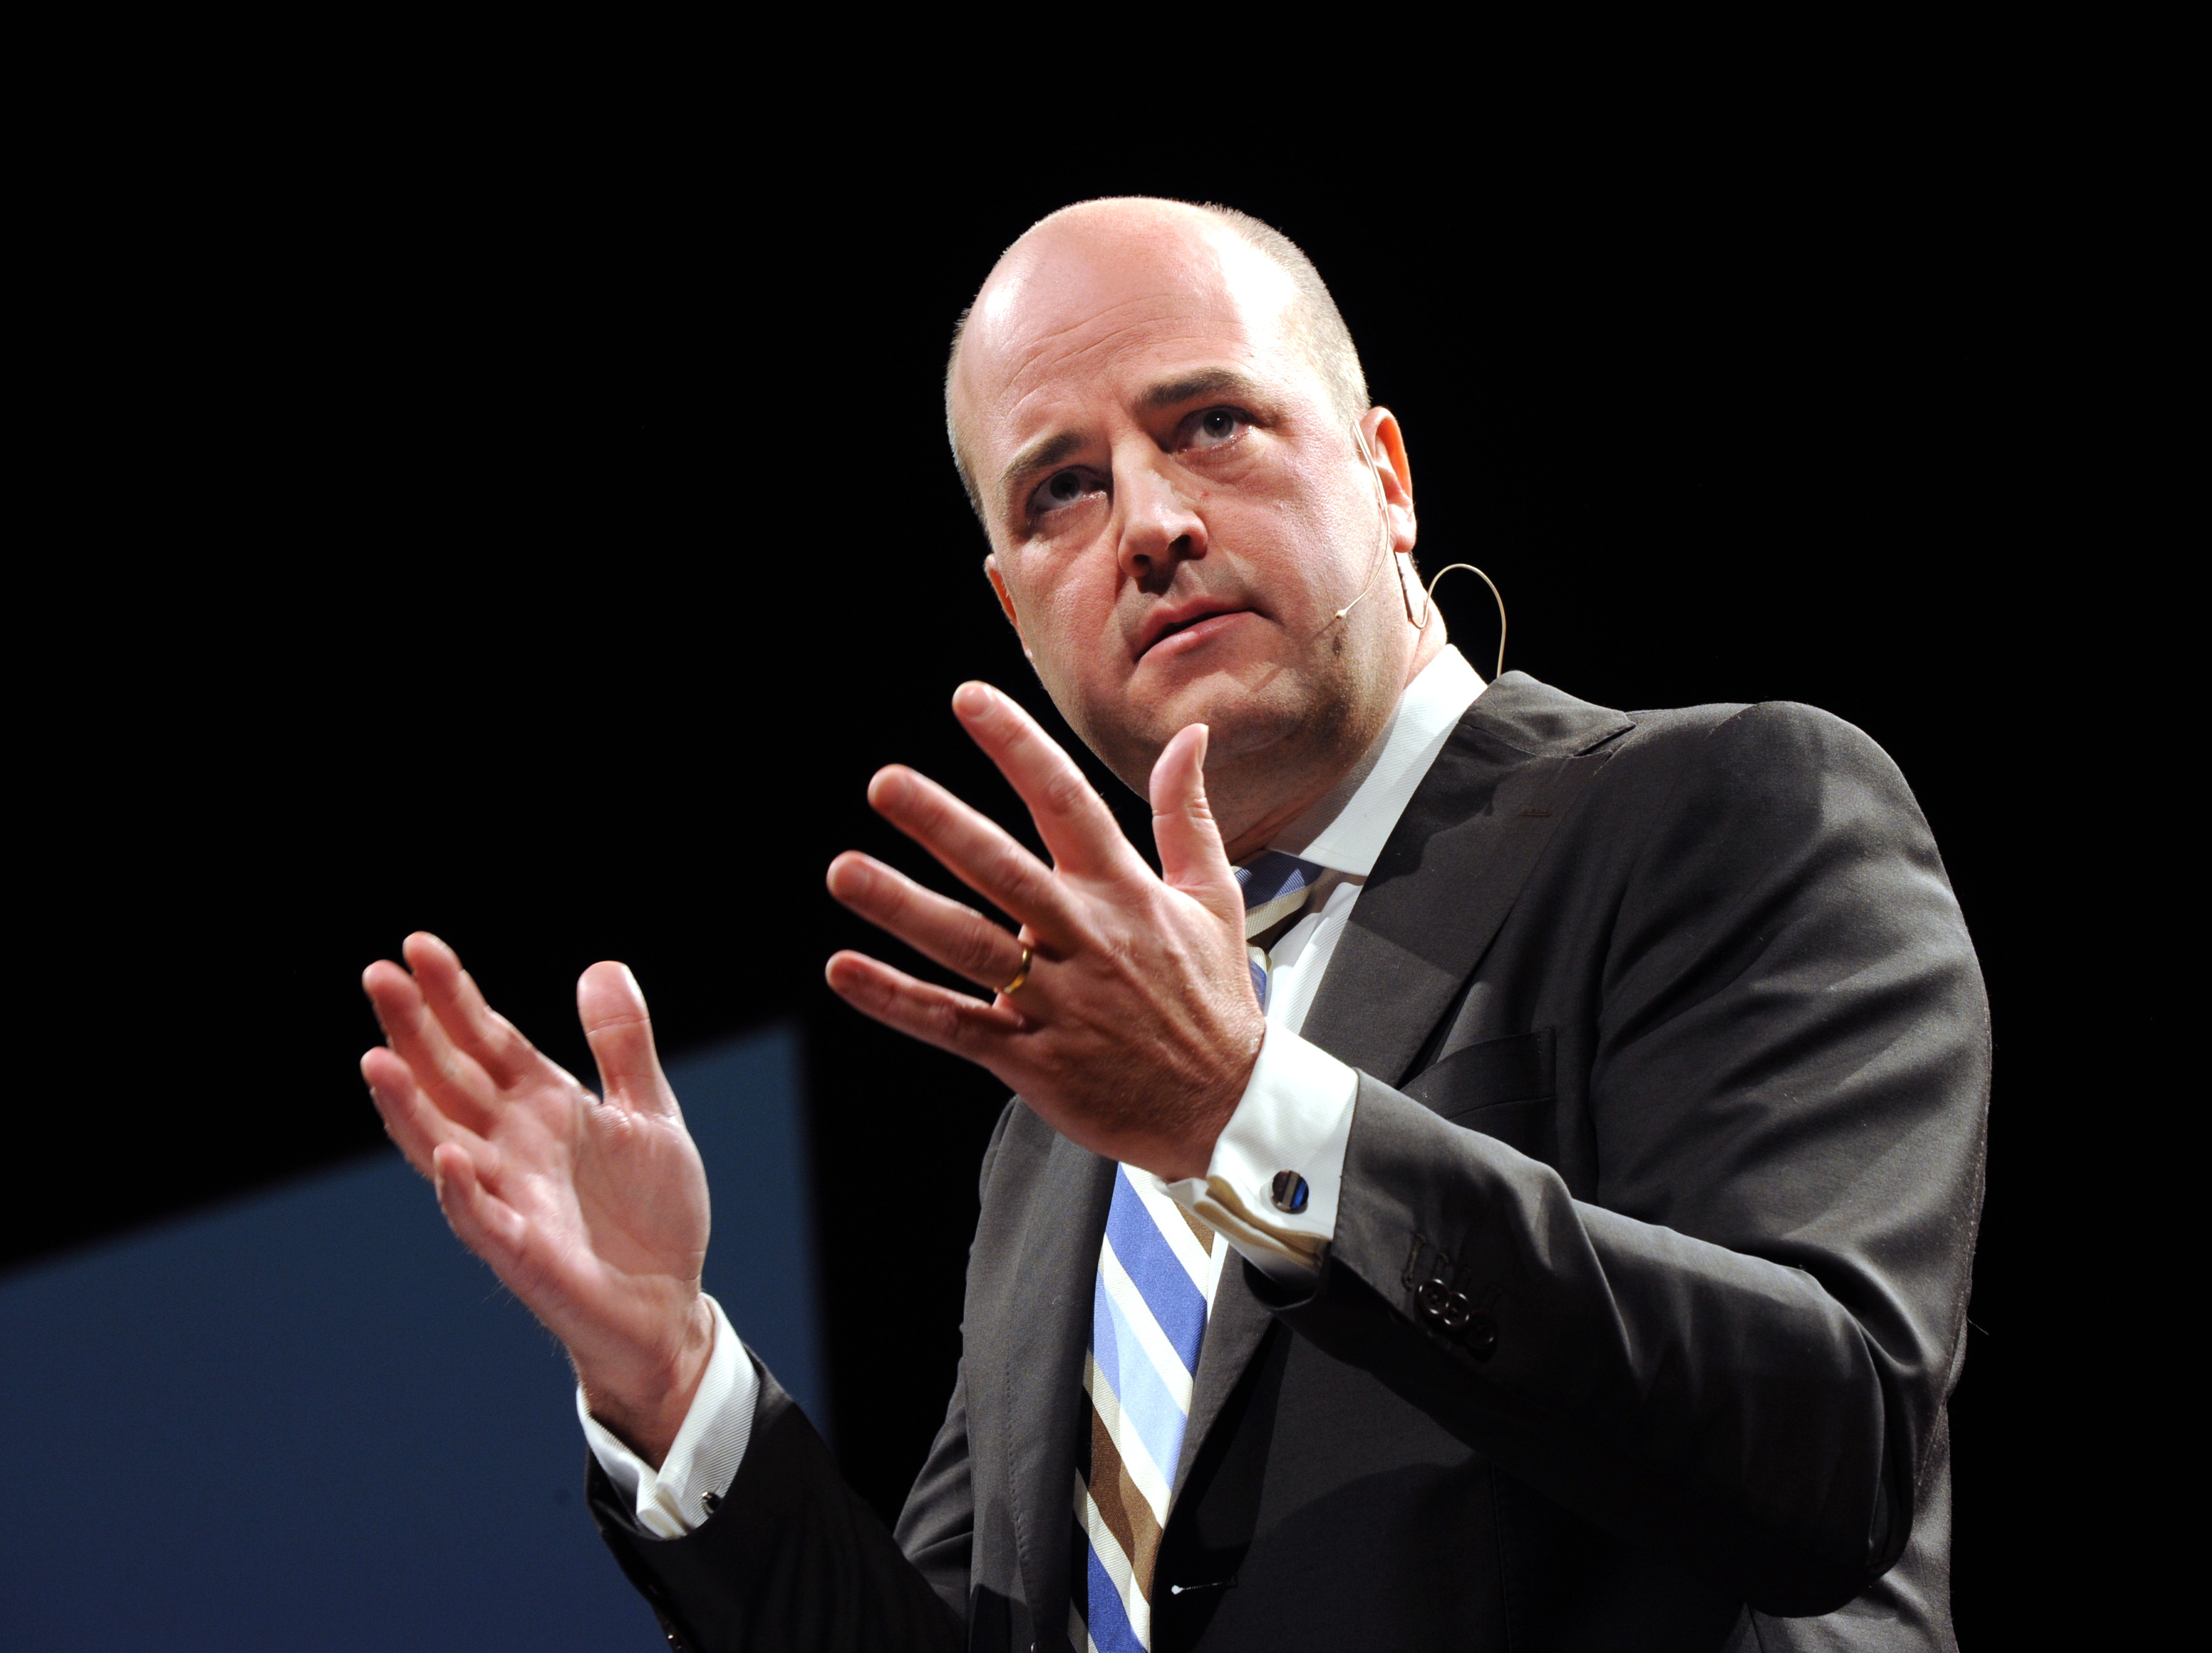 Fredrik Reinfeldt har än så länge valt att inte kommentera händelsen.